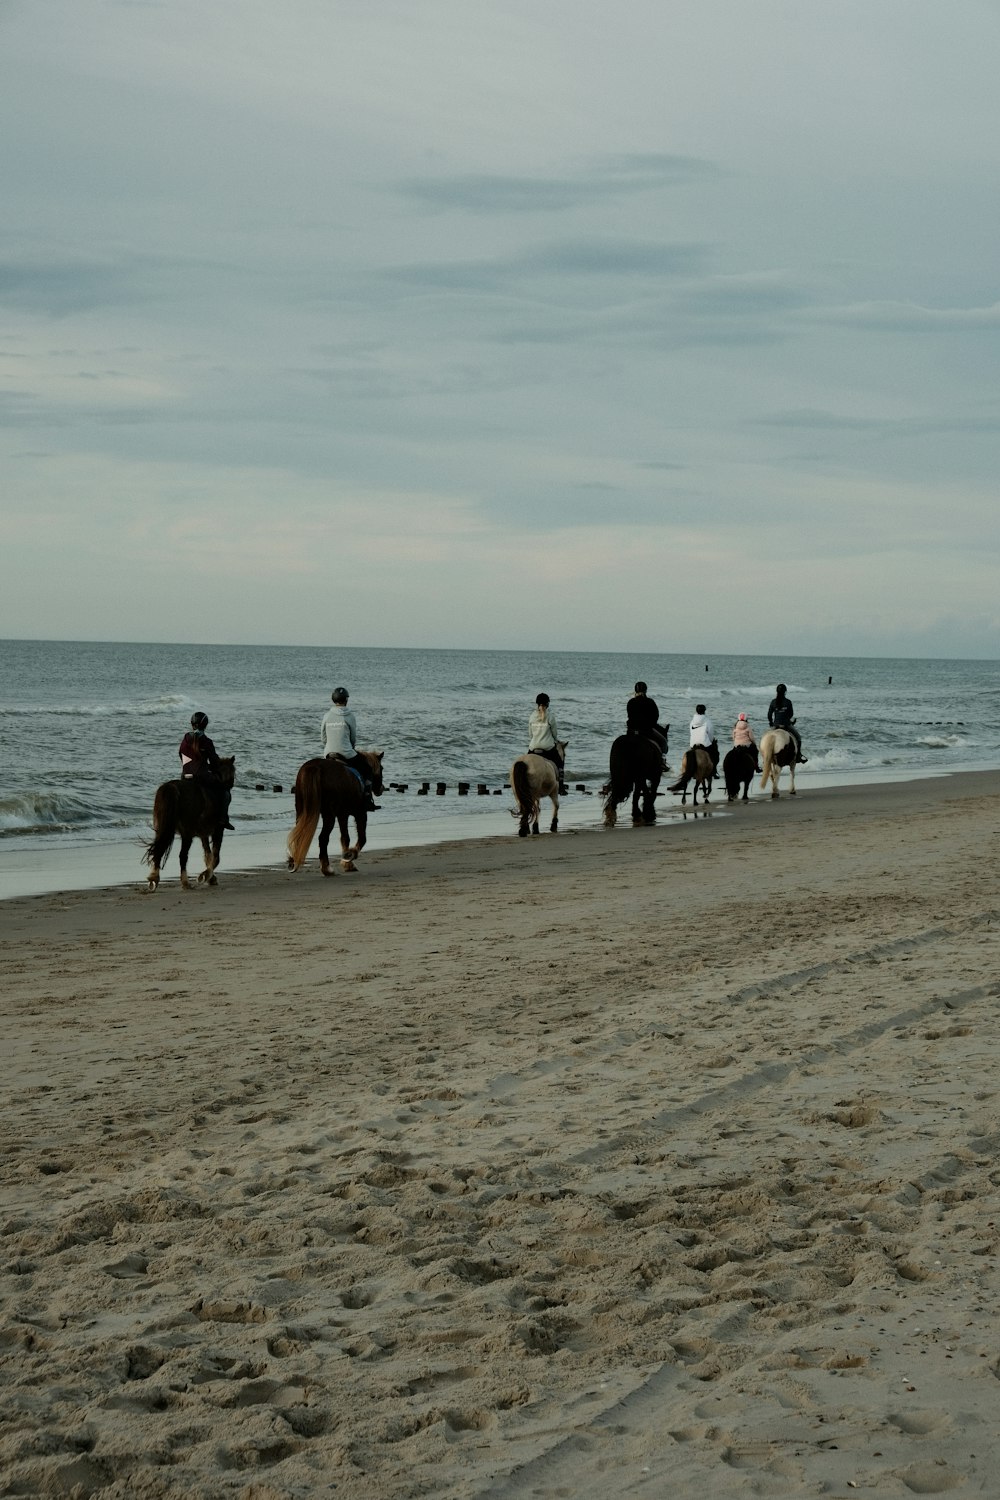 해변에서 말을 타고 있는 한 무리의 사람들